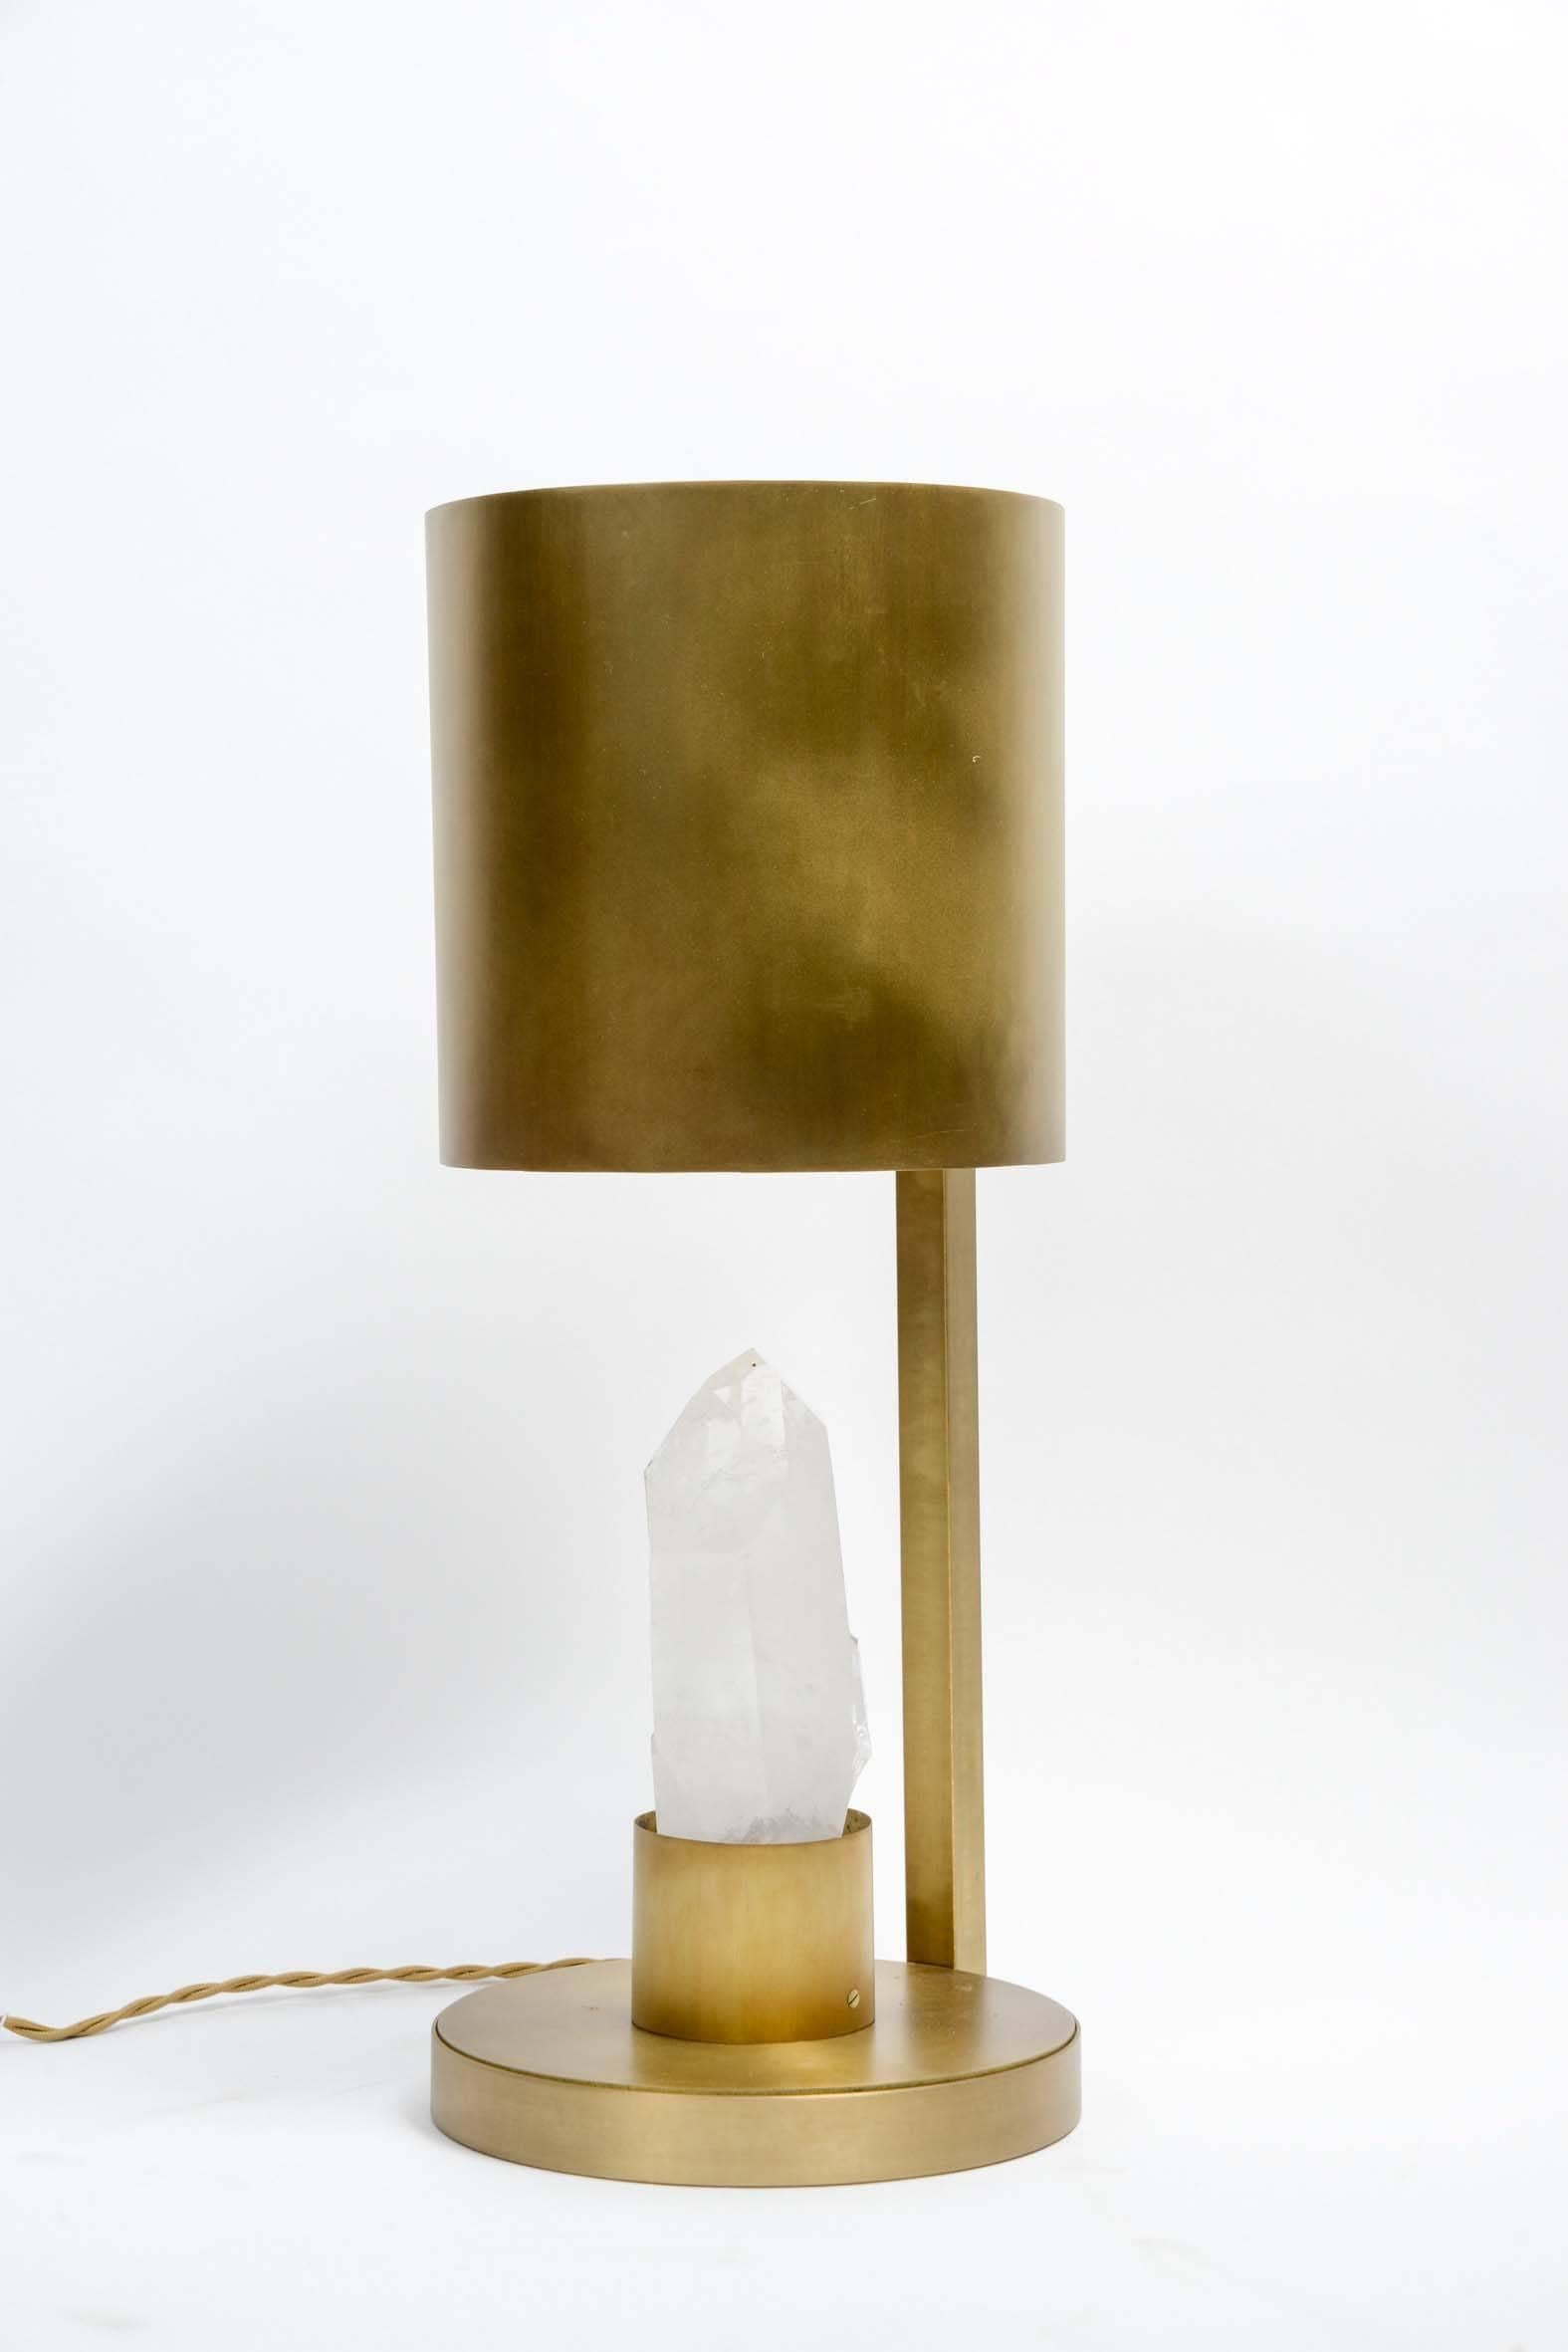 Lampe de bureau cylindrique en laiton avec une pièce centrale en cristal de roche.

Une source de lumière, une ampoule qui éclaire le cristal de roche par le haut.